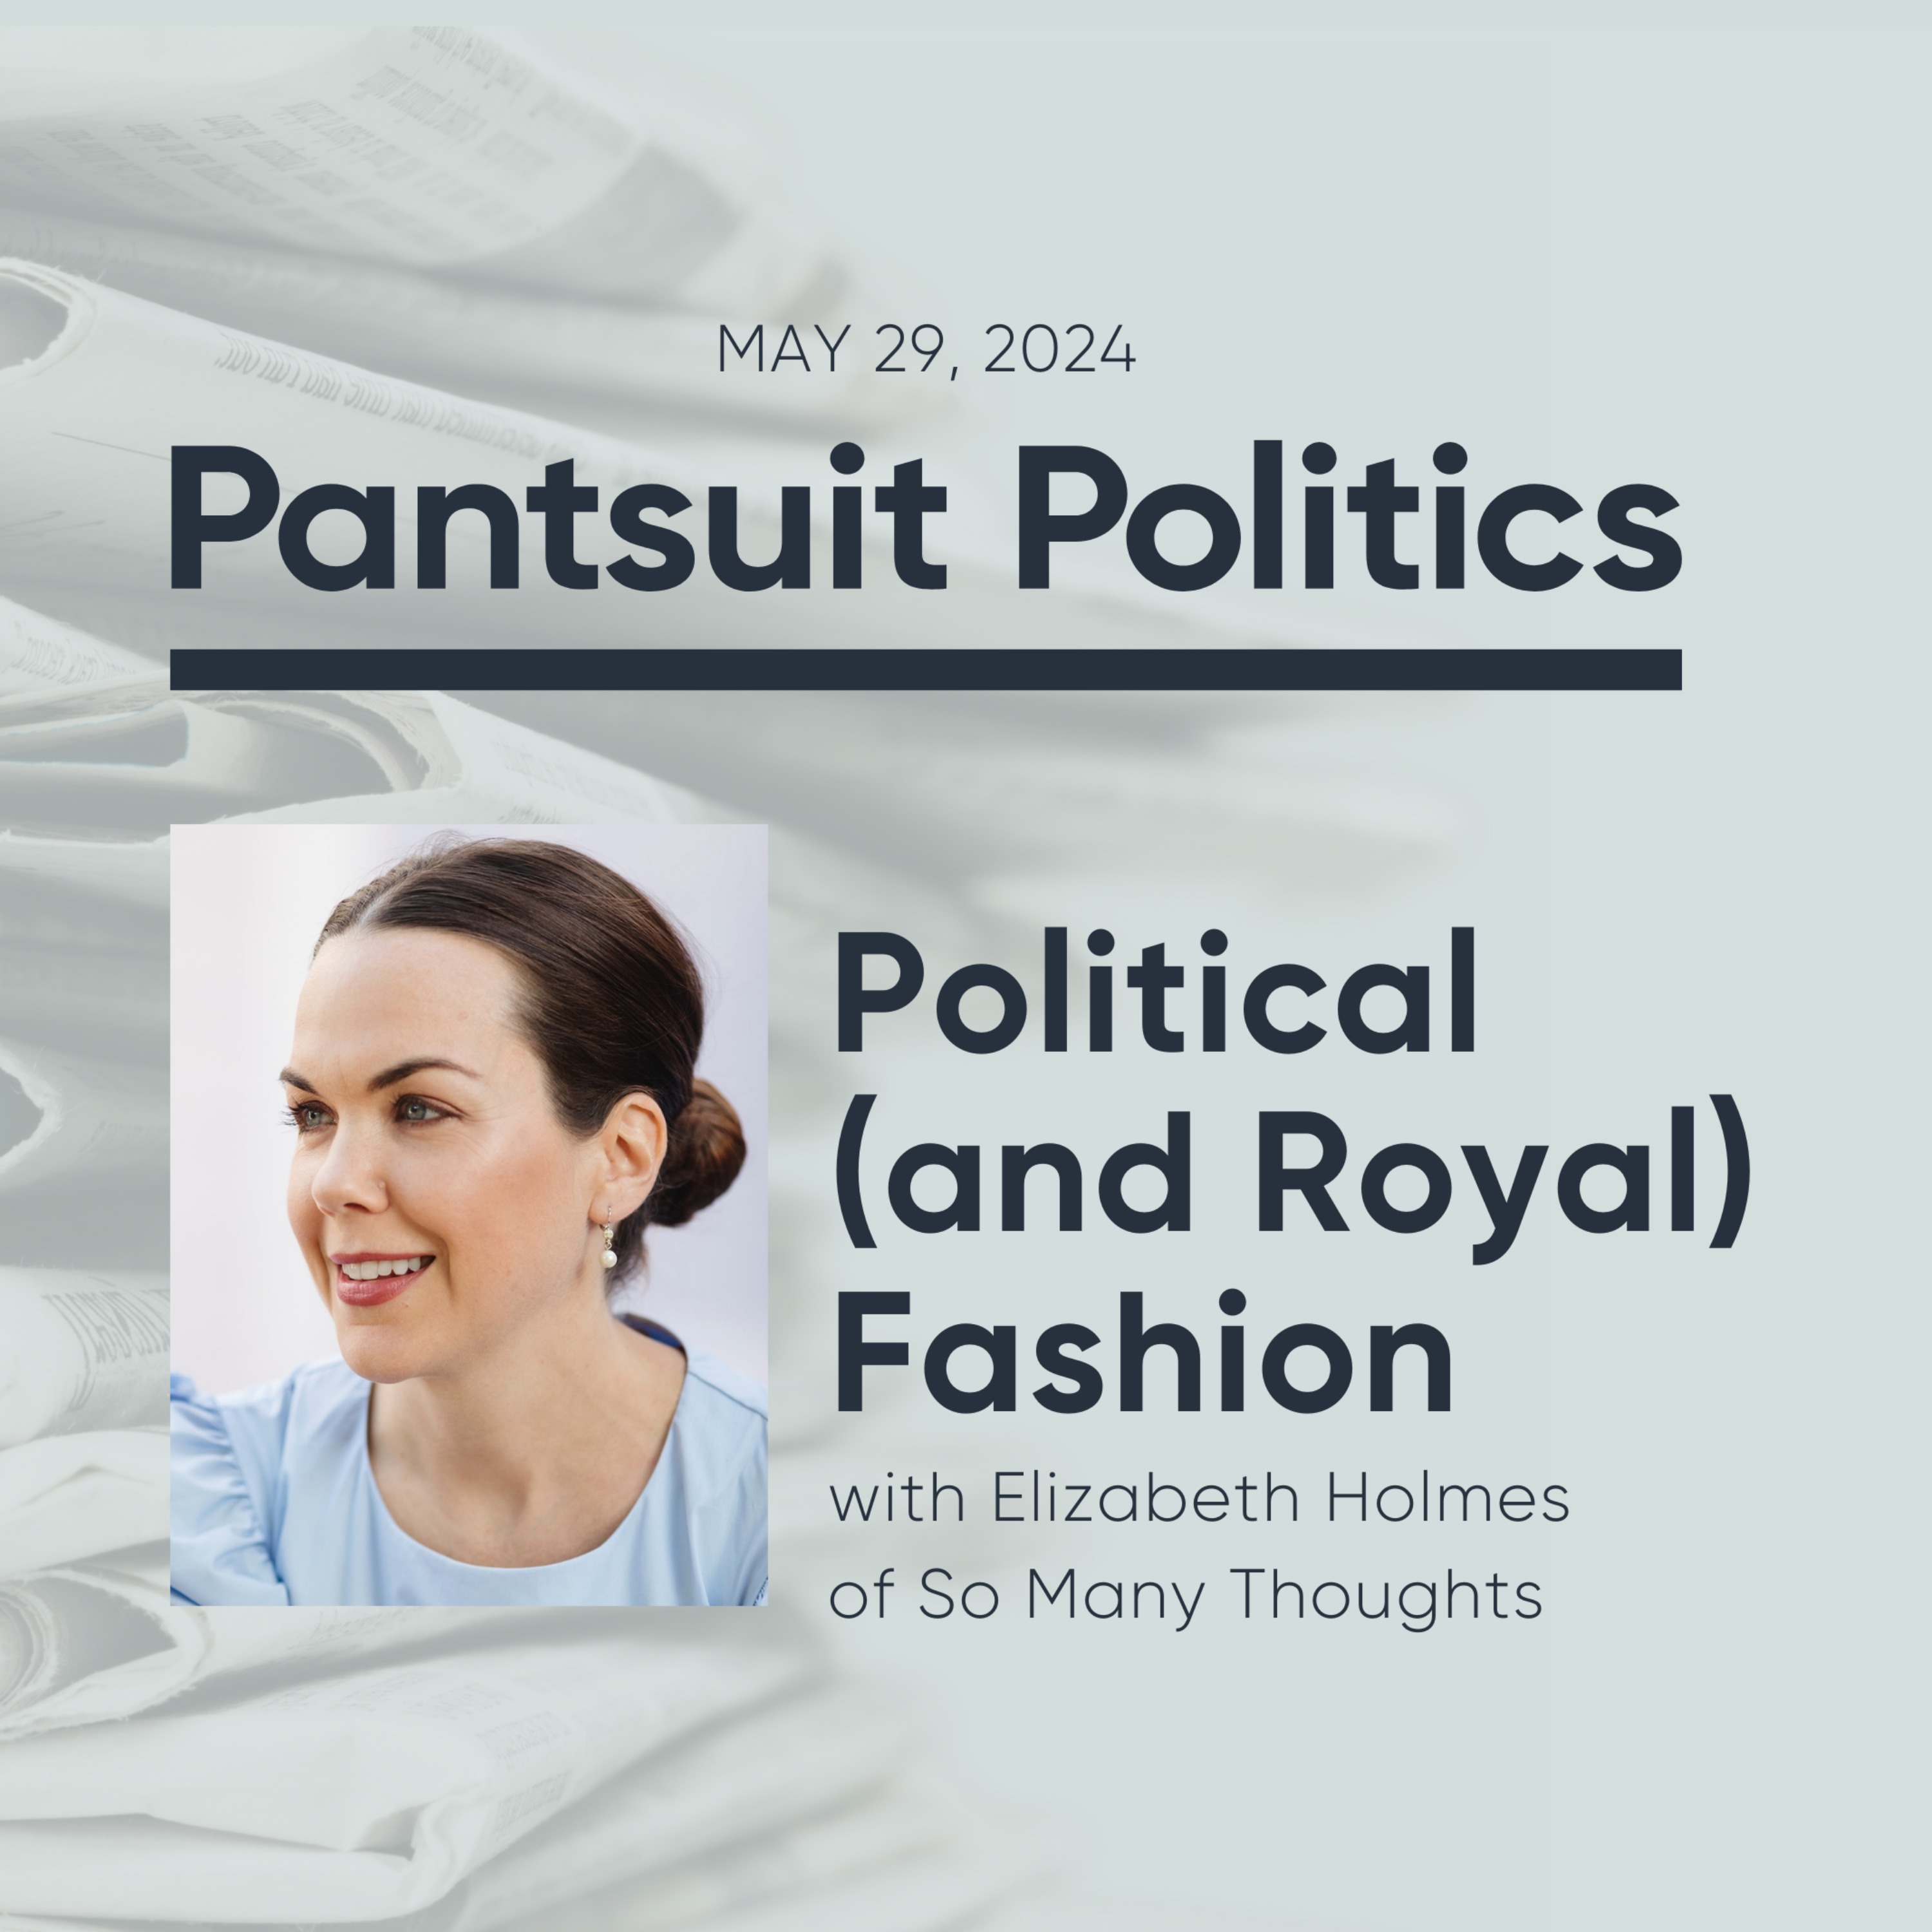 Political (and Royal) Fashion with Elizabeth Holmes